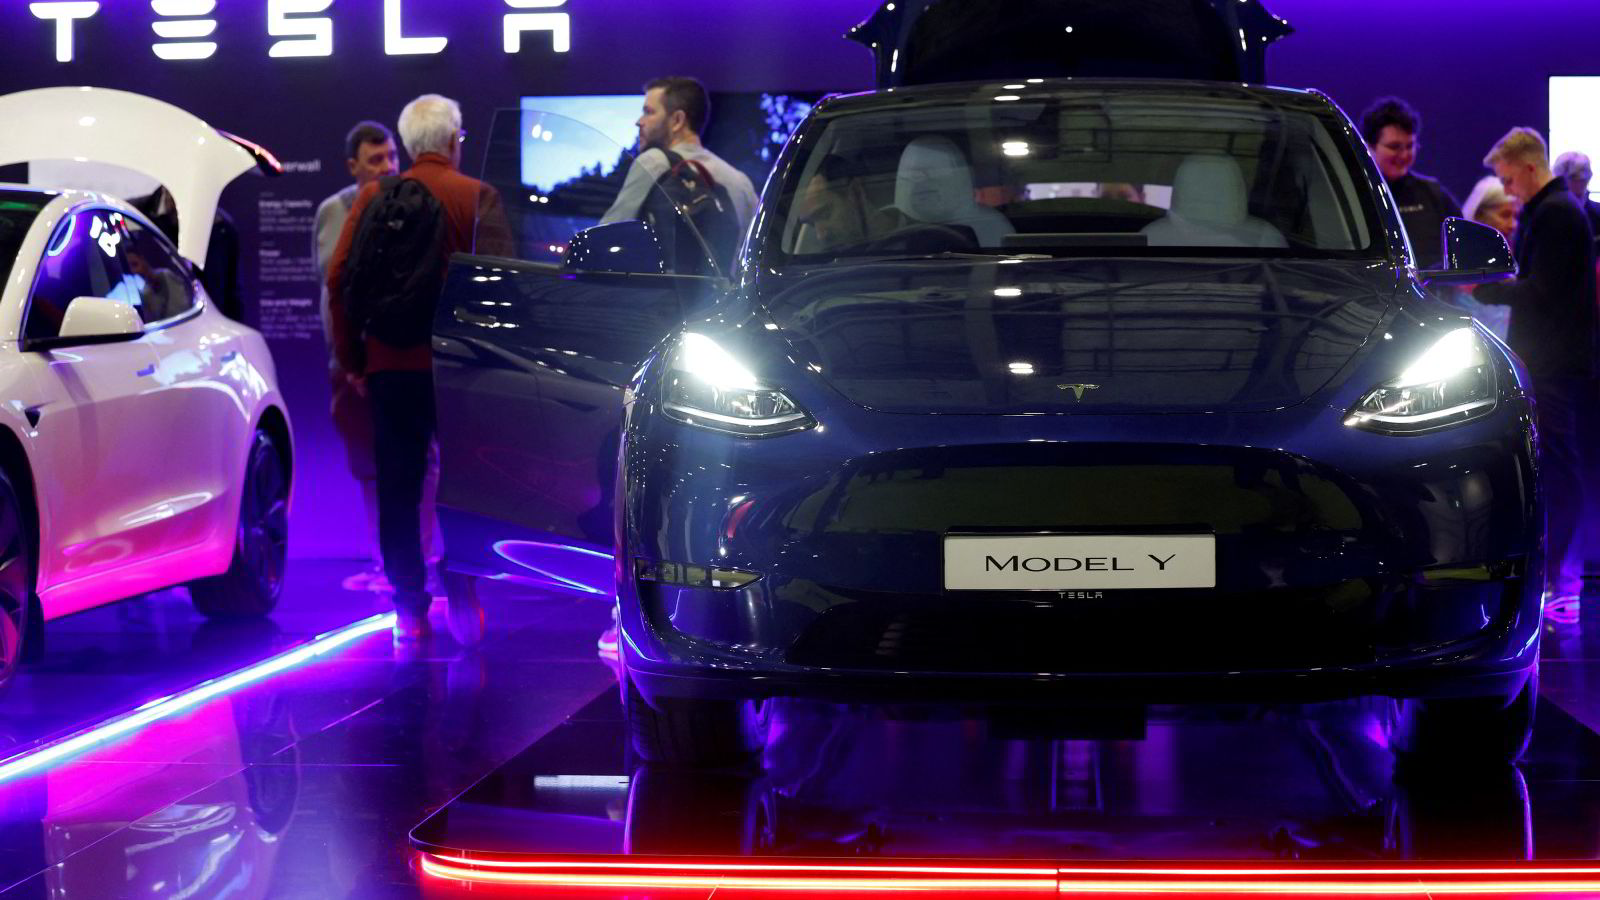 Tesla med salgsbom på 14 prosent – aksjen under sterkt press